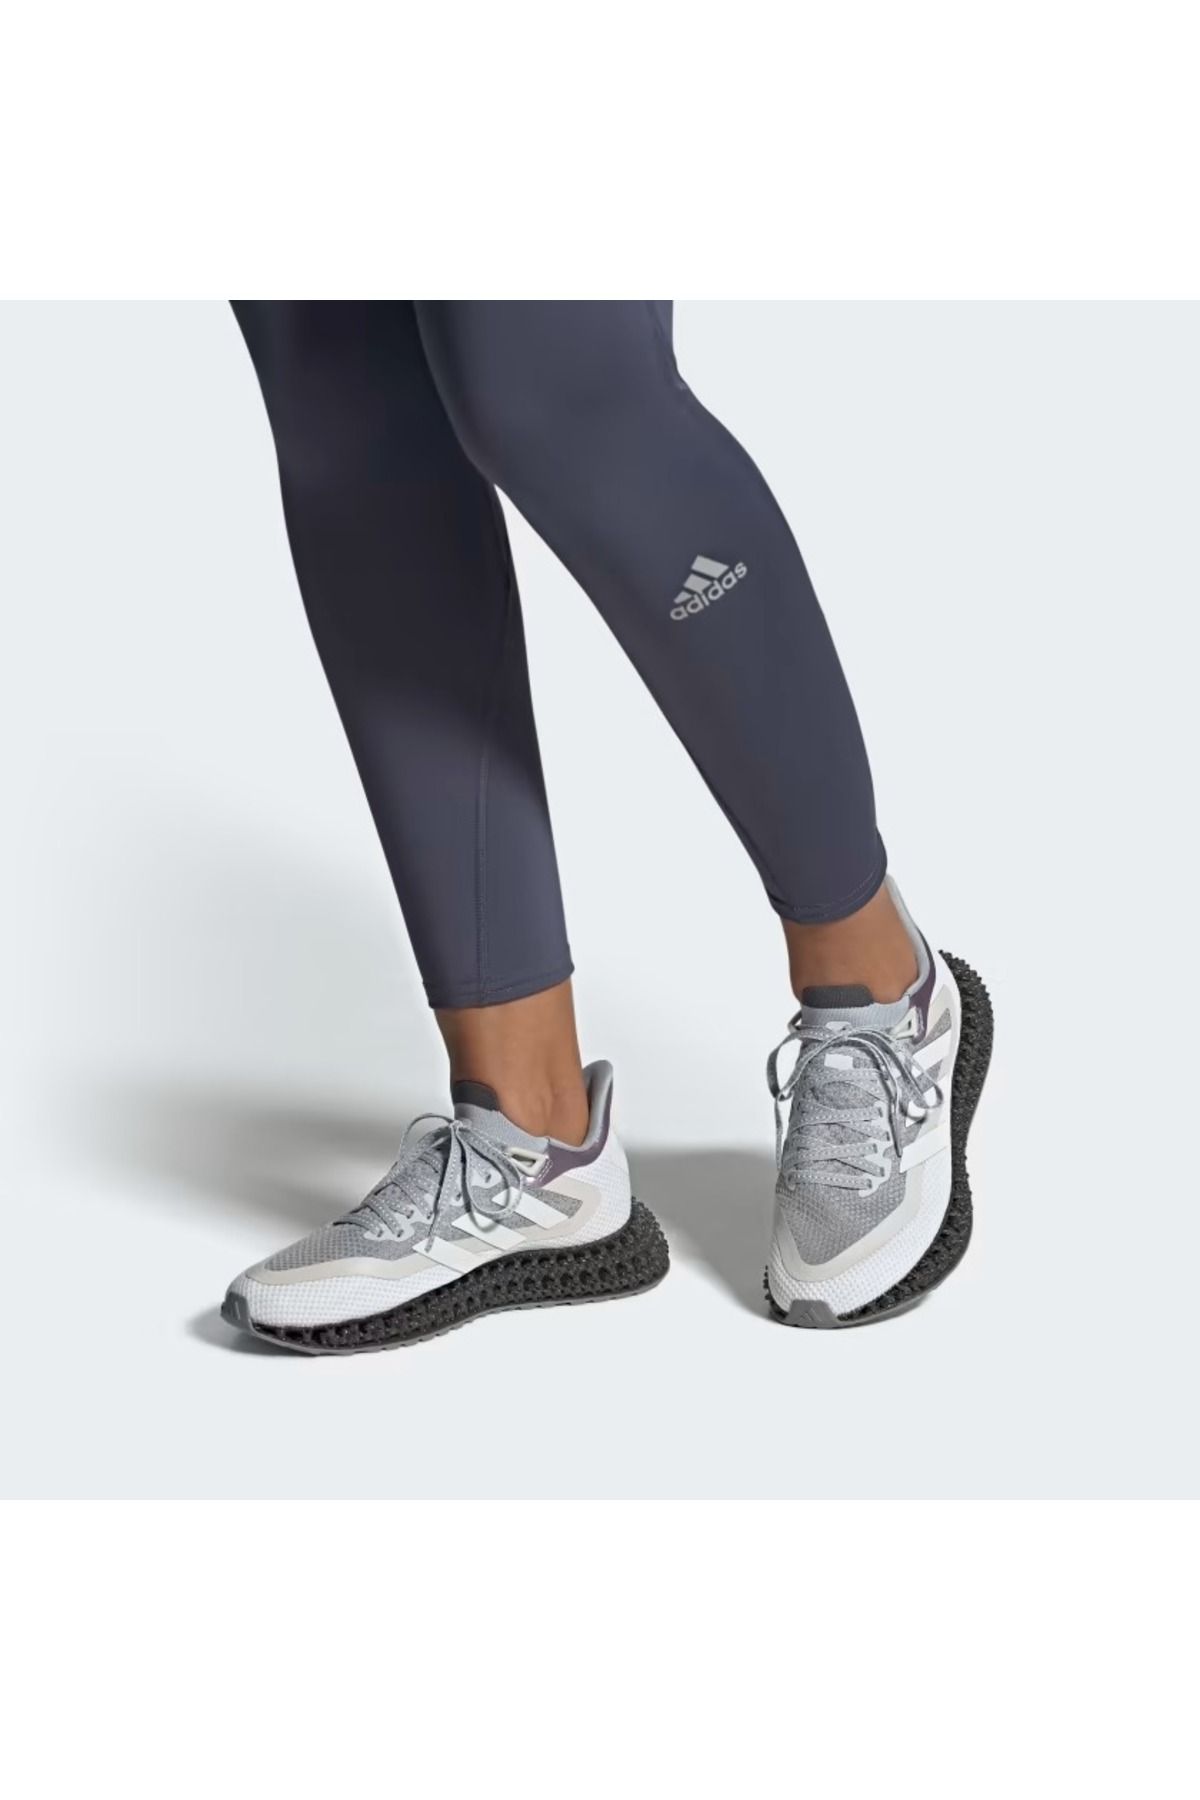 adidas 4dfwd 2 kadın gri  koşu antrenman spor ayakkabı hp3204